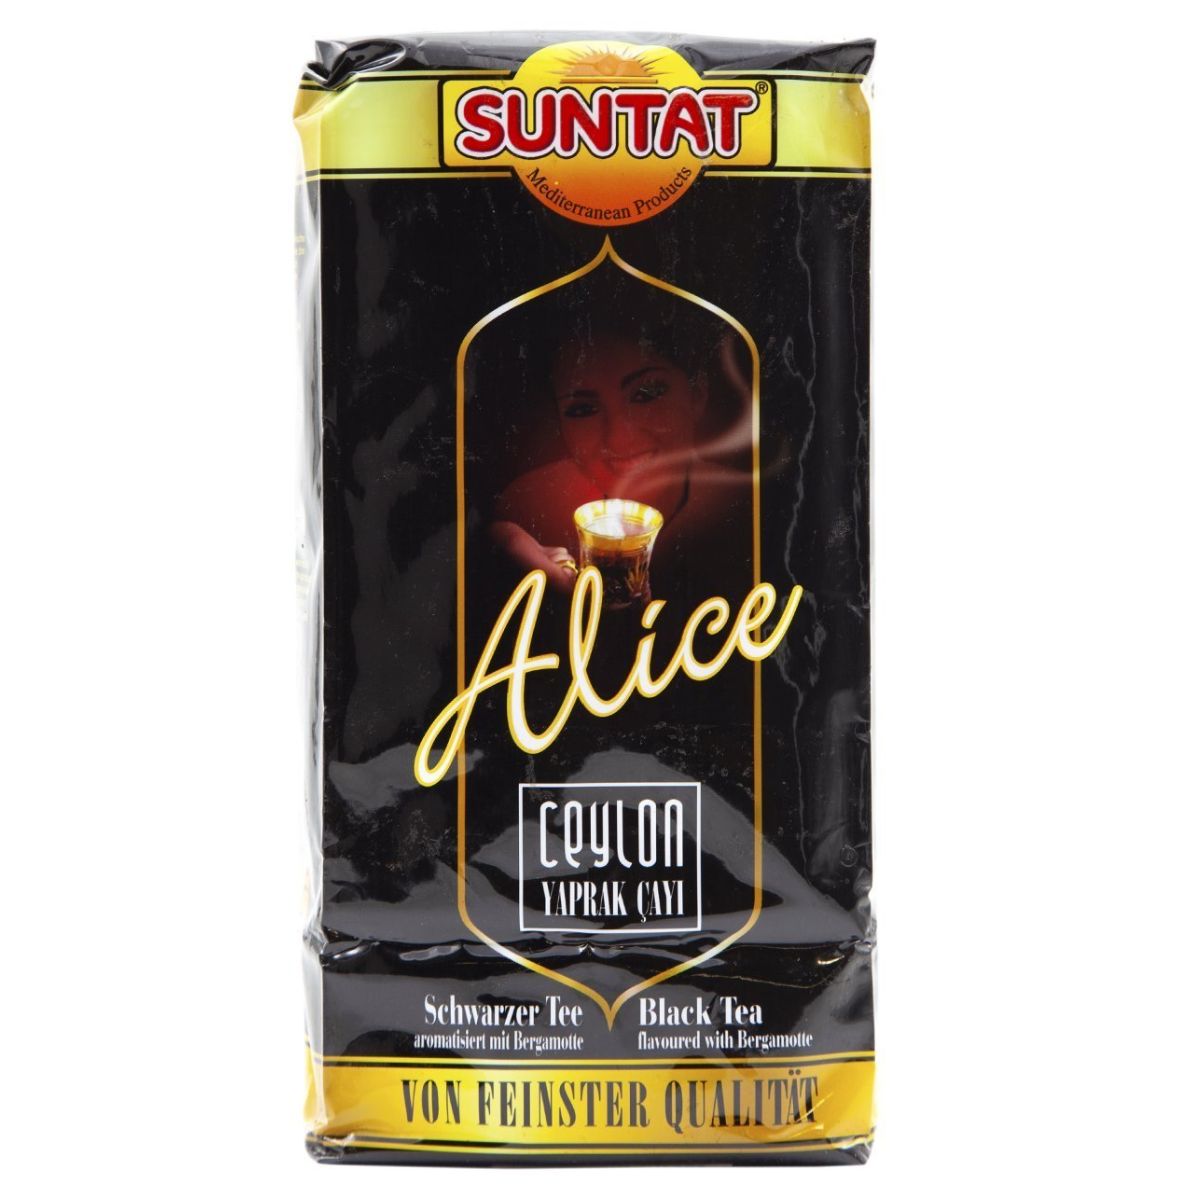 A bag of Suntat - Alice Ceylon Yaprak Cayi Tea - 500g.